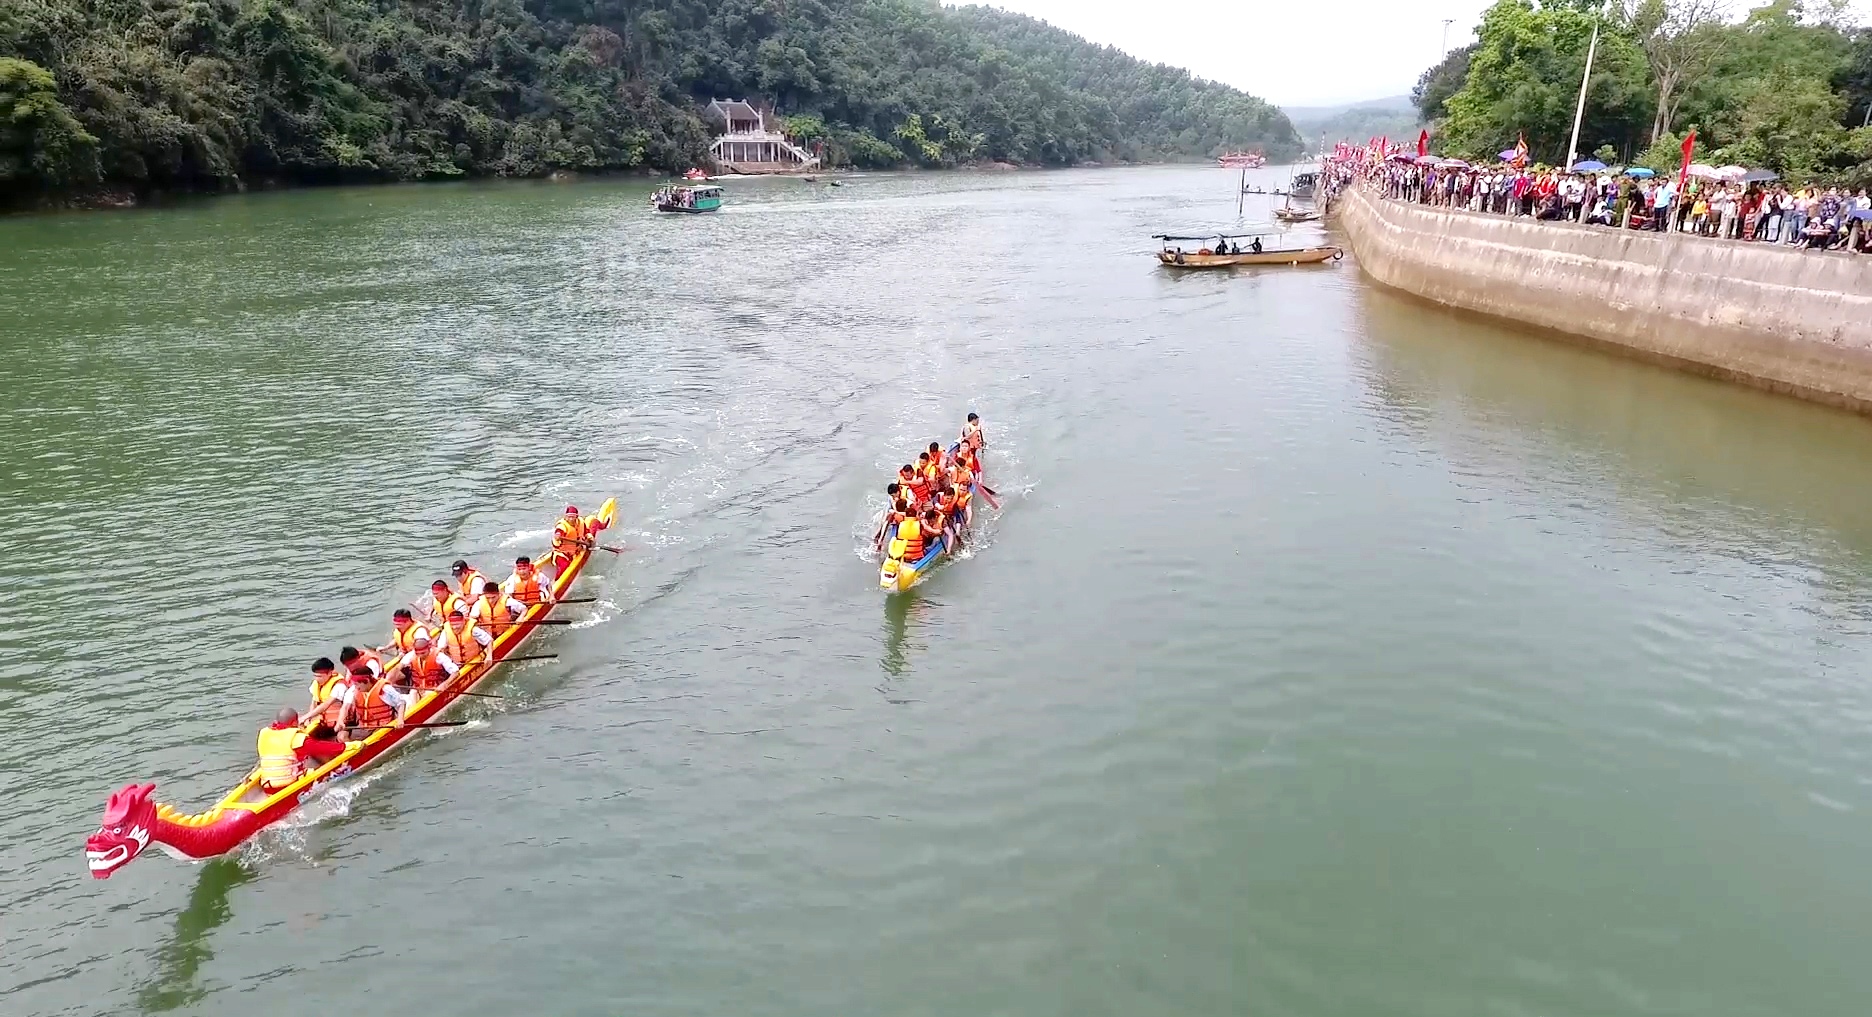 Đua thuyền trên sông Ba Chẽ là một nội dung trong phần hội tại Lễ hội miếu Ông - miếu Bà hàng năm.